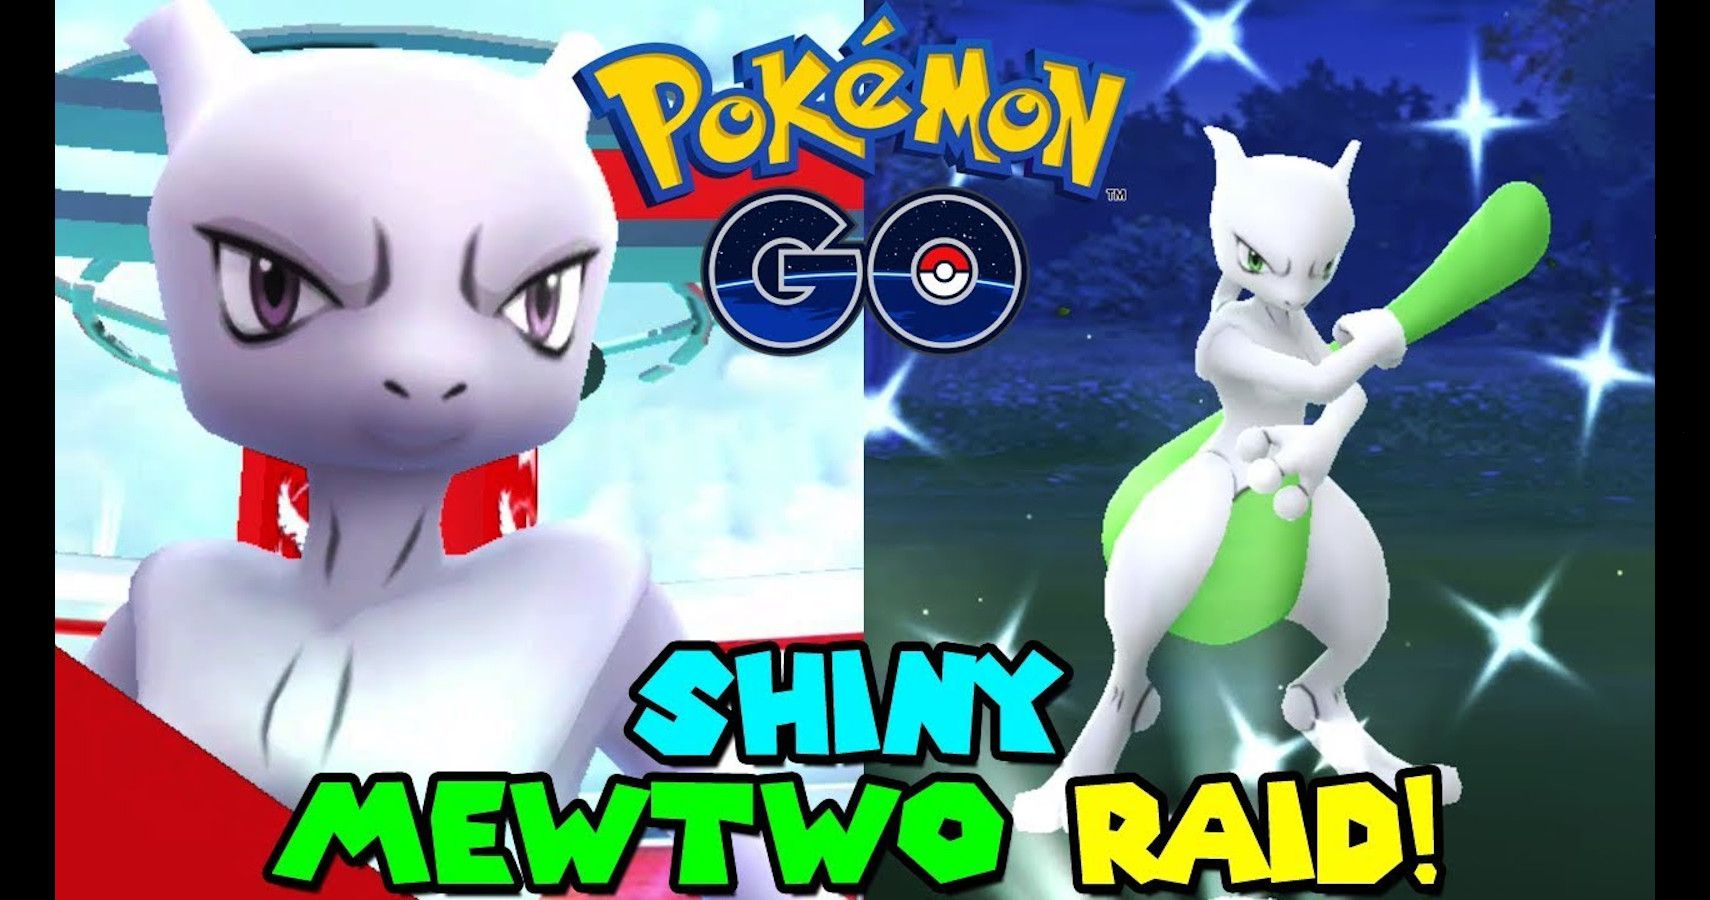 Pokémon GOs Next Ex Raid Is Mewtwo Again